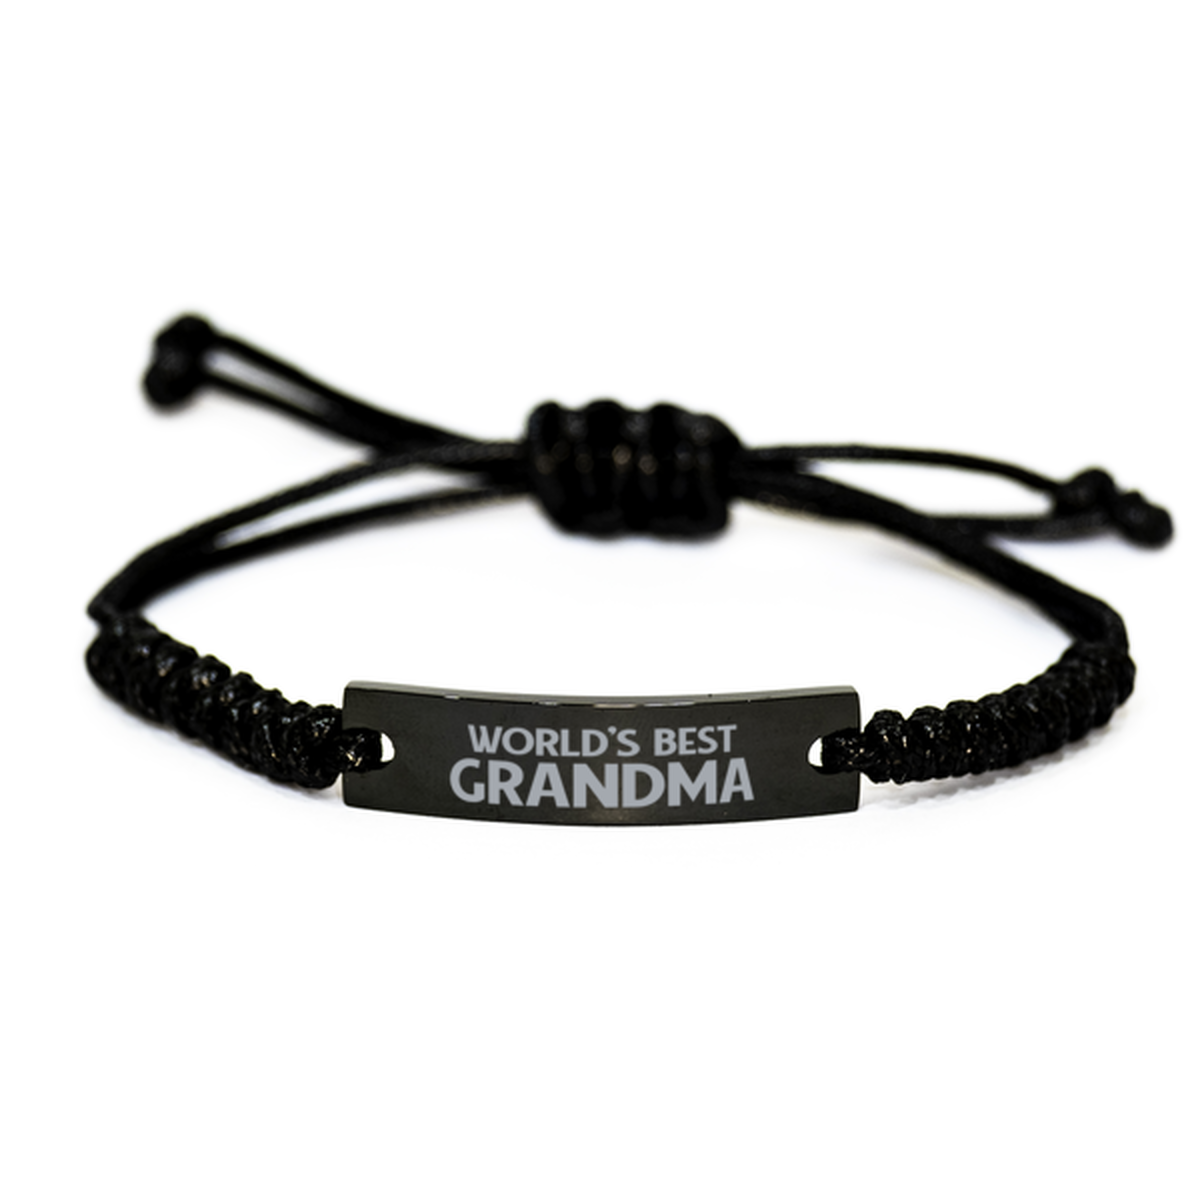 World's Best Grandma Gifts, Funny Engraved Rope Bracelet For Grandma, Birthday Family Gifts For Women